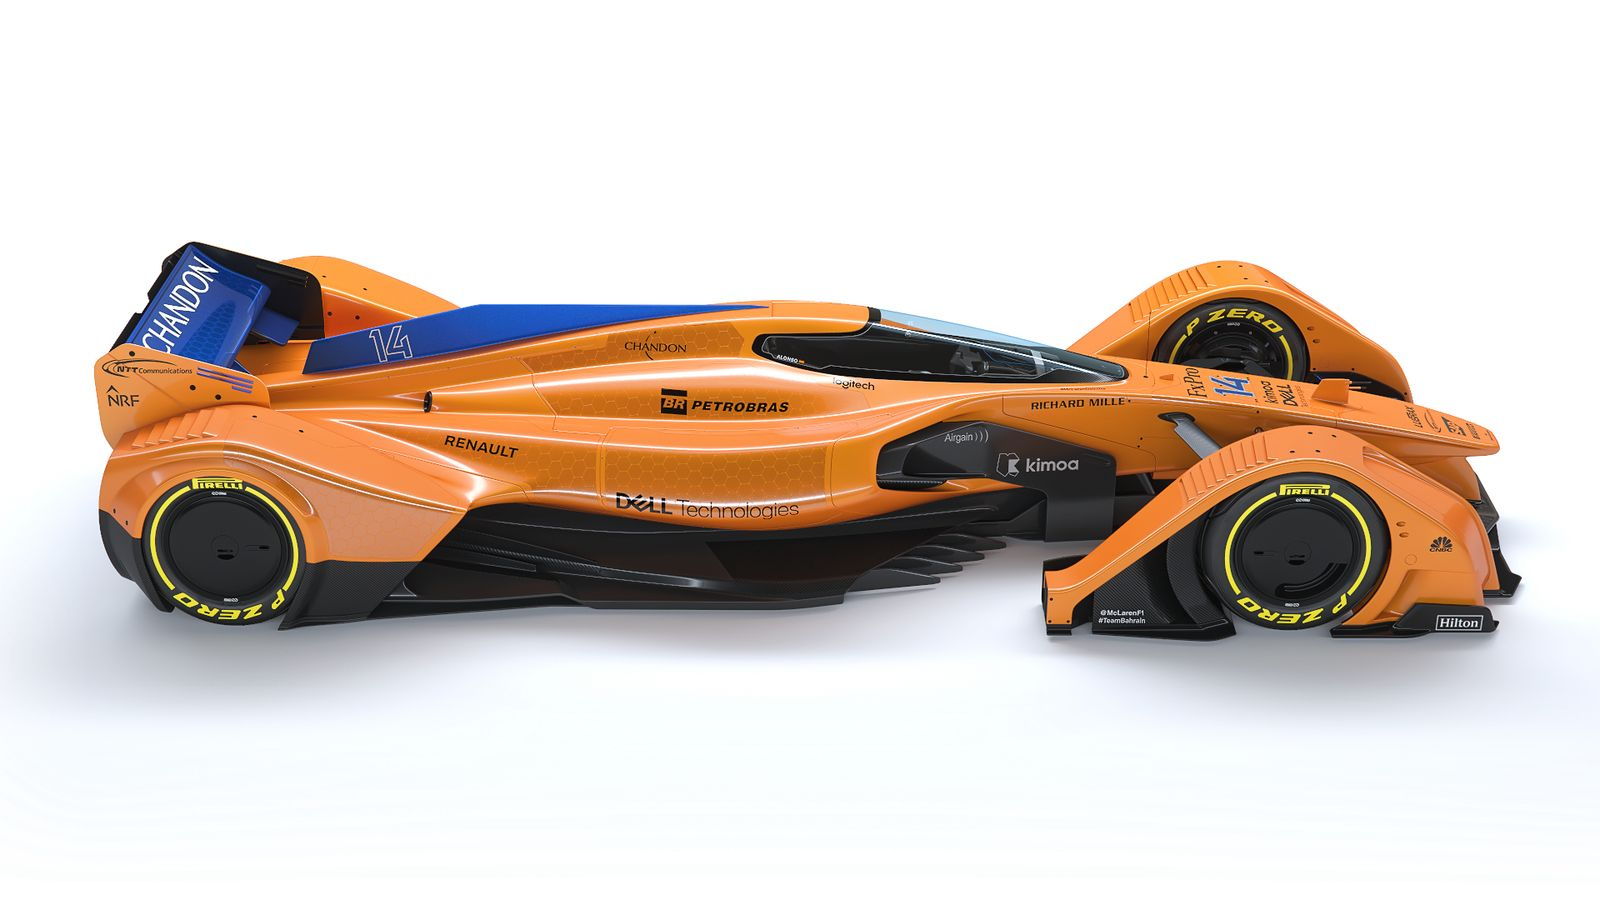 McLaren X2 concept race car with new papaya livery